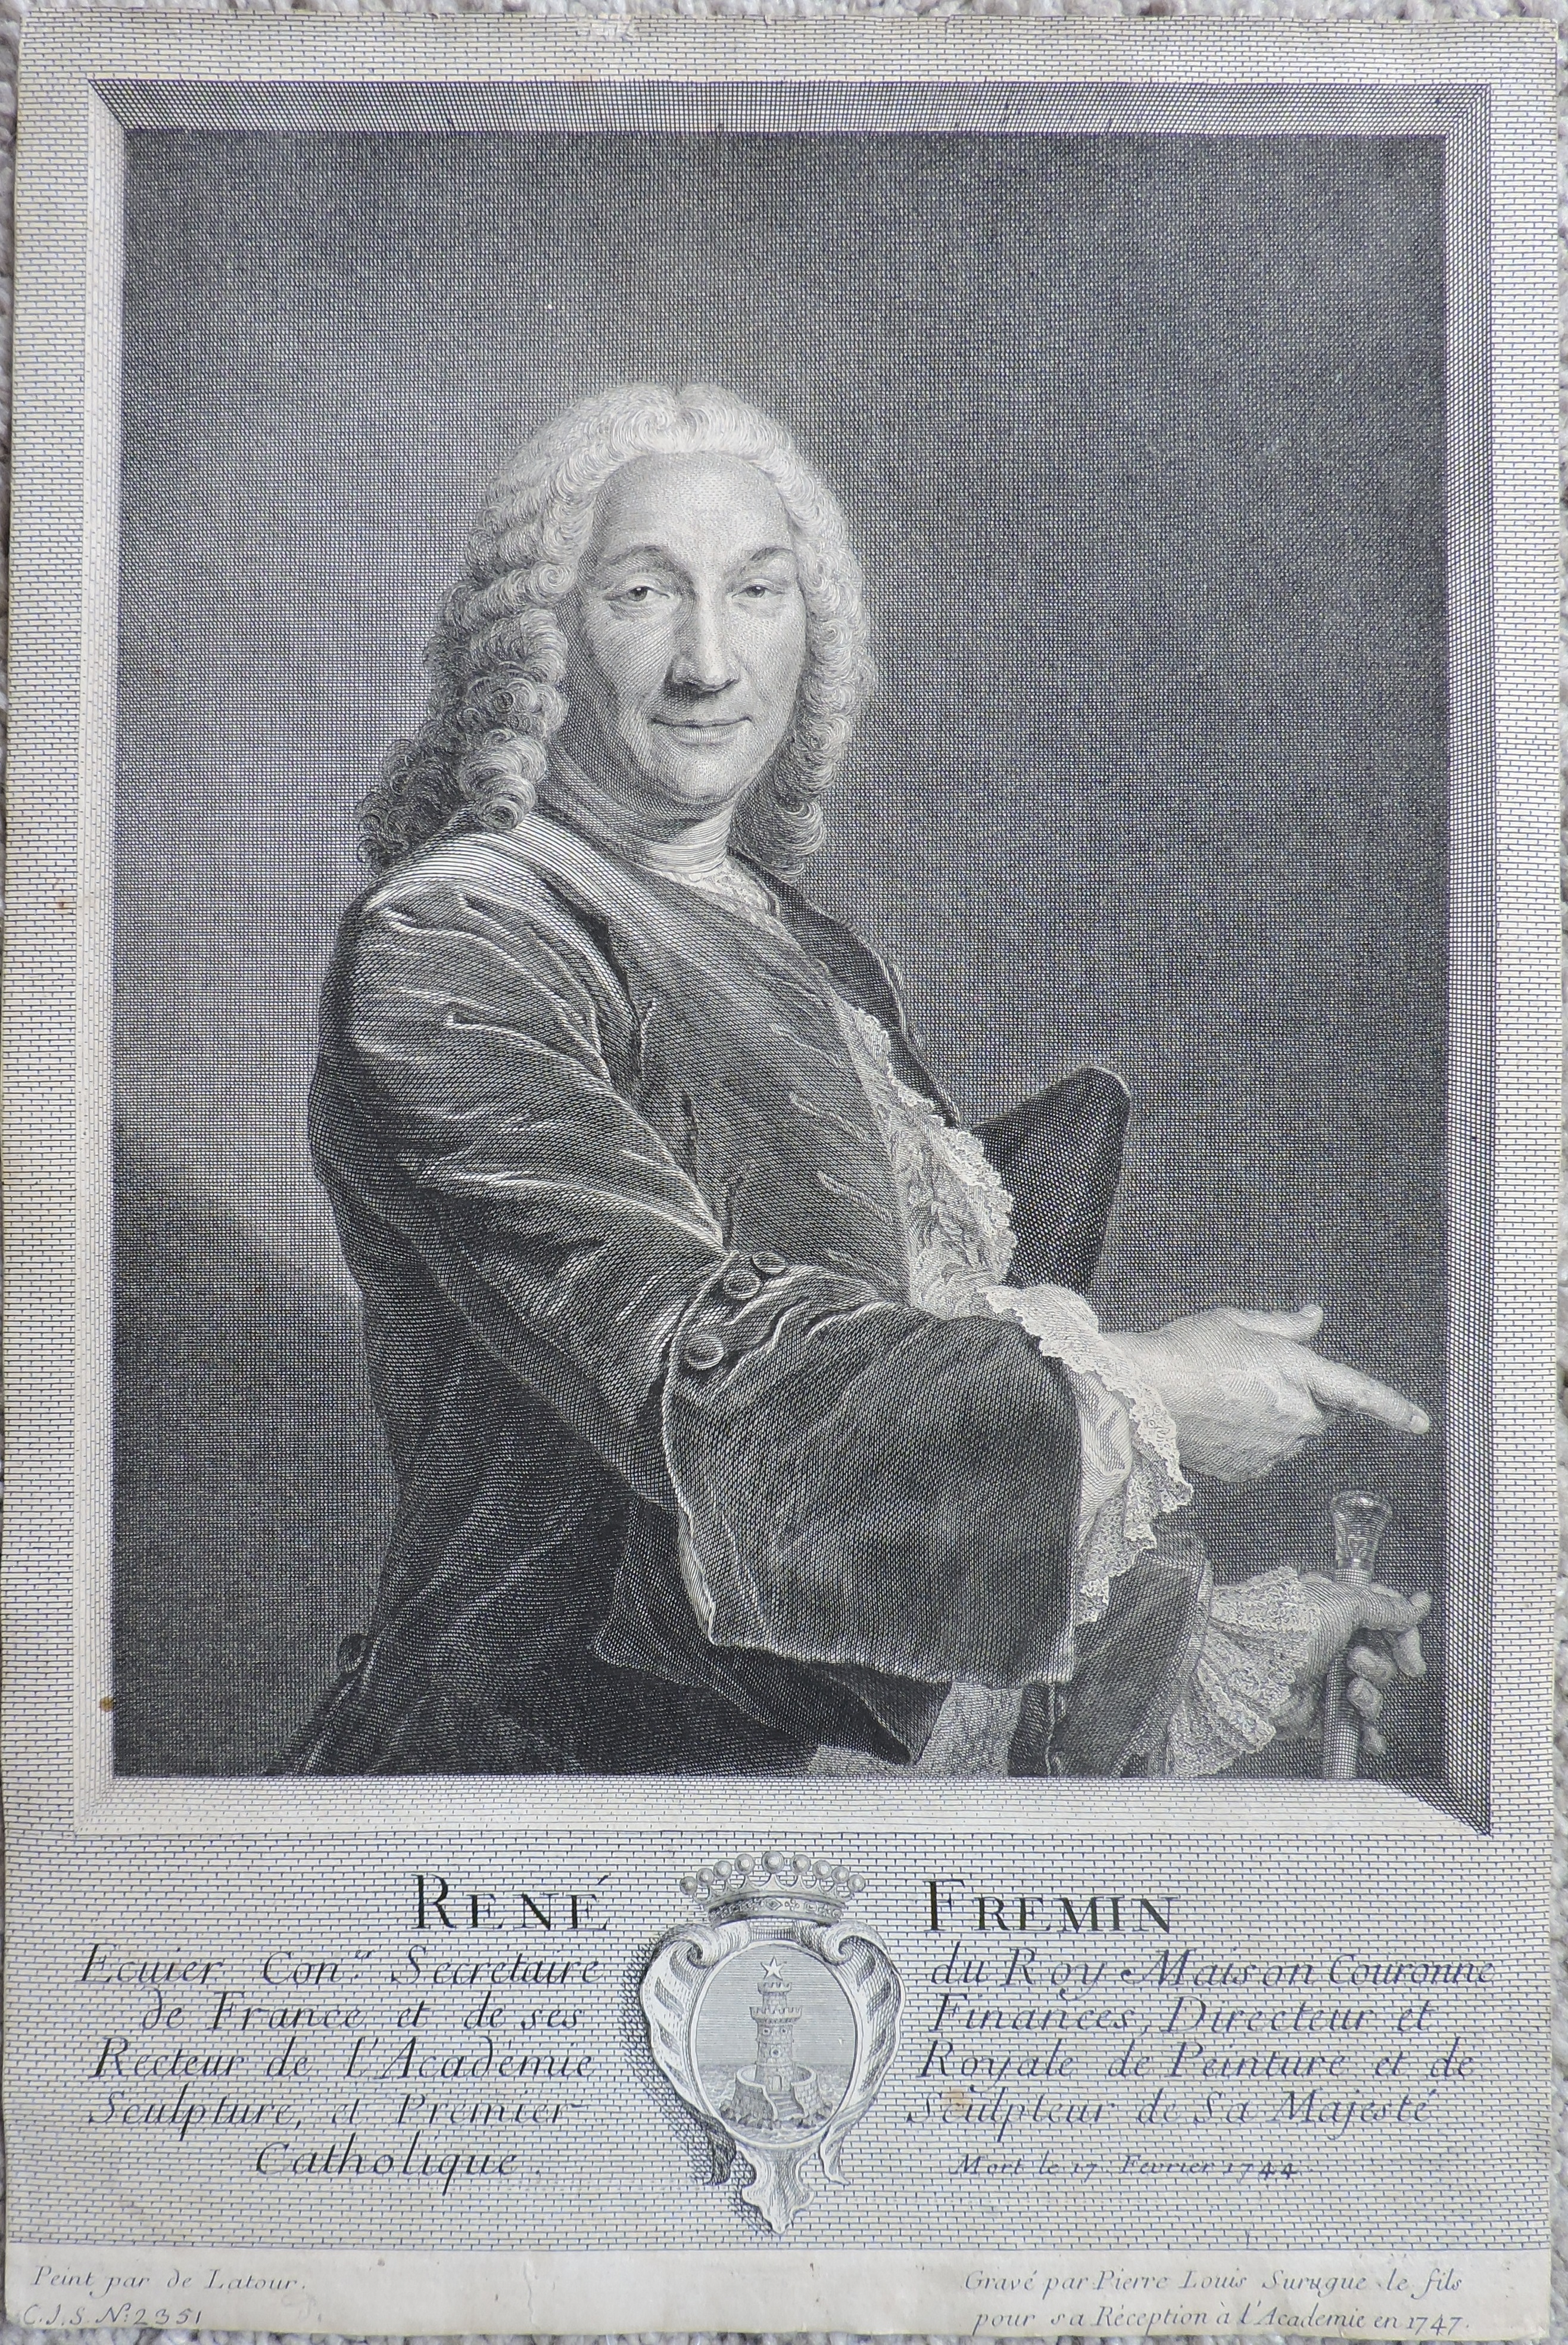 René Frémin